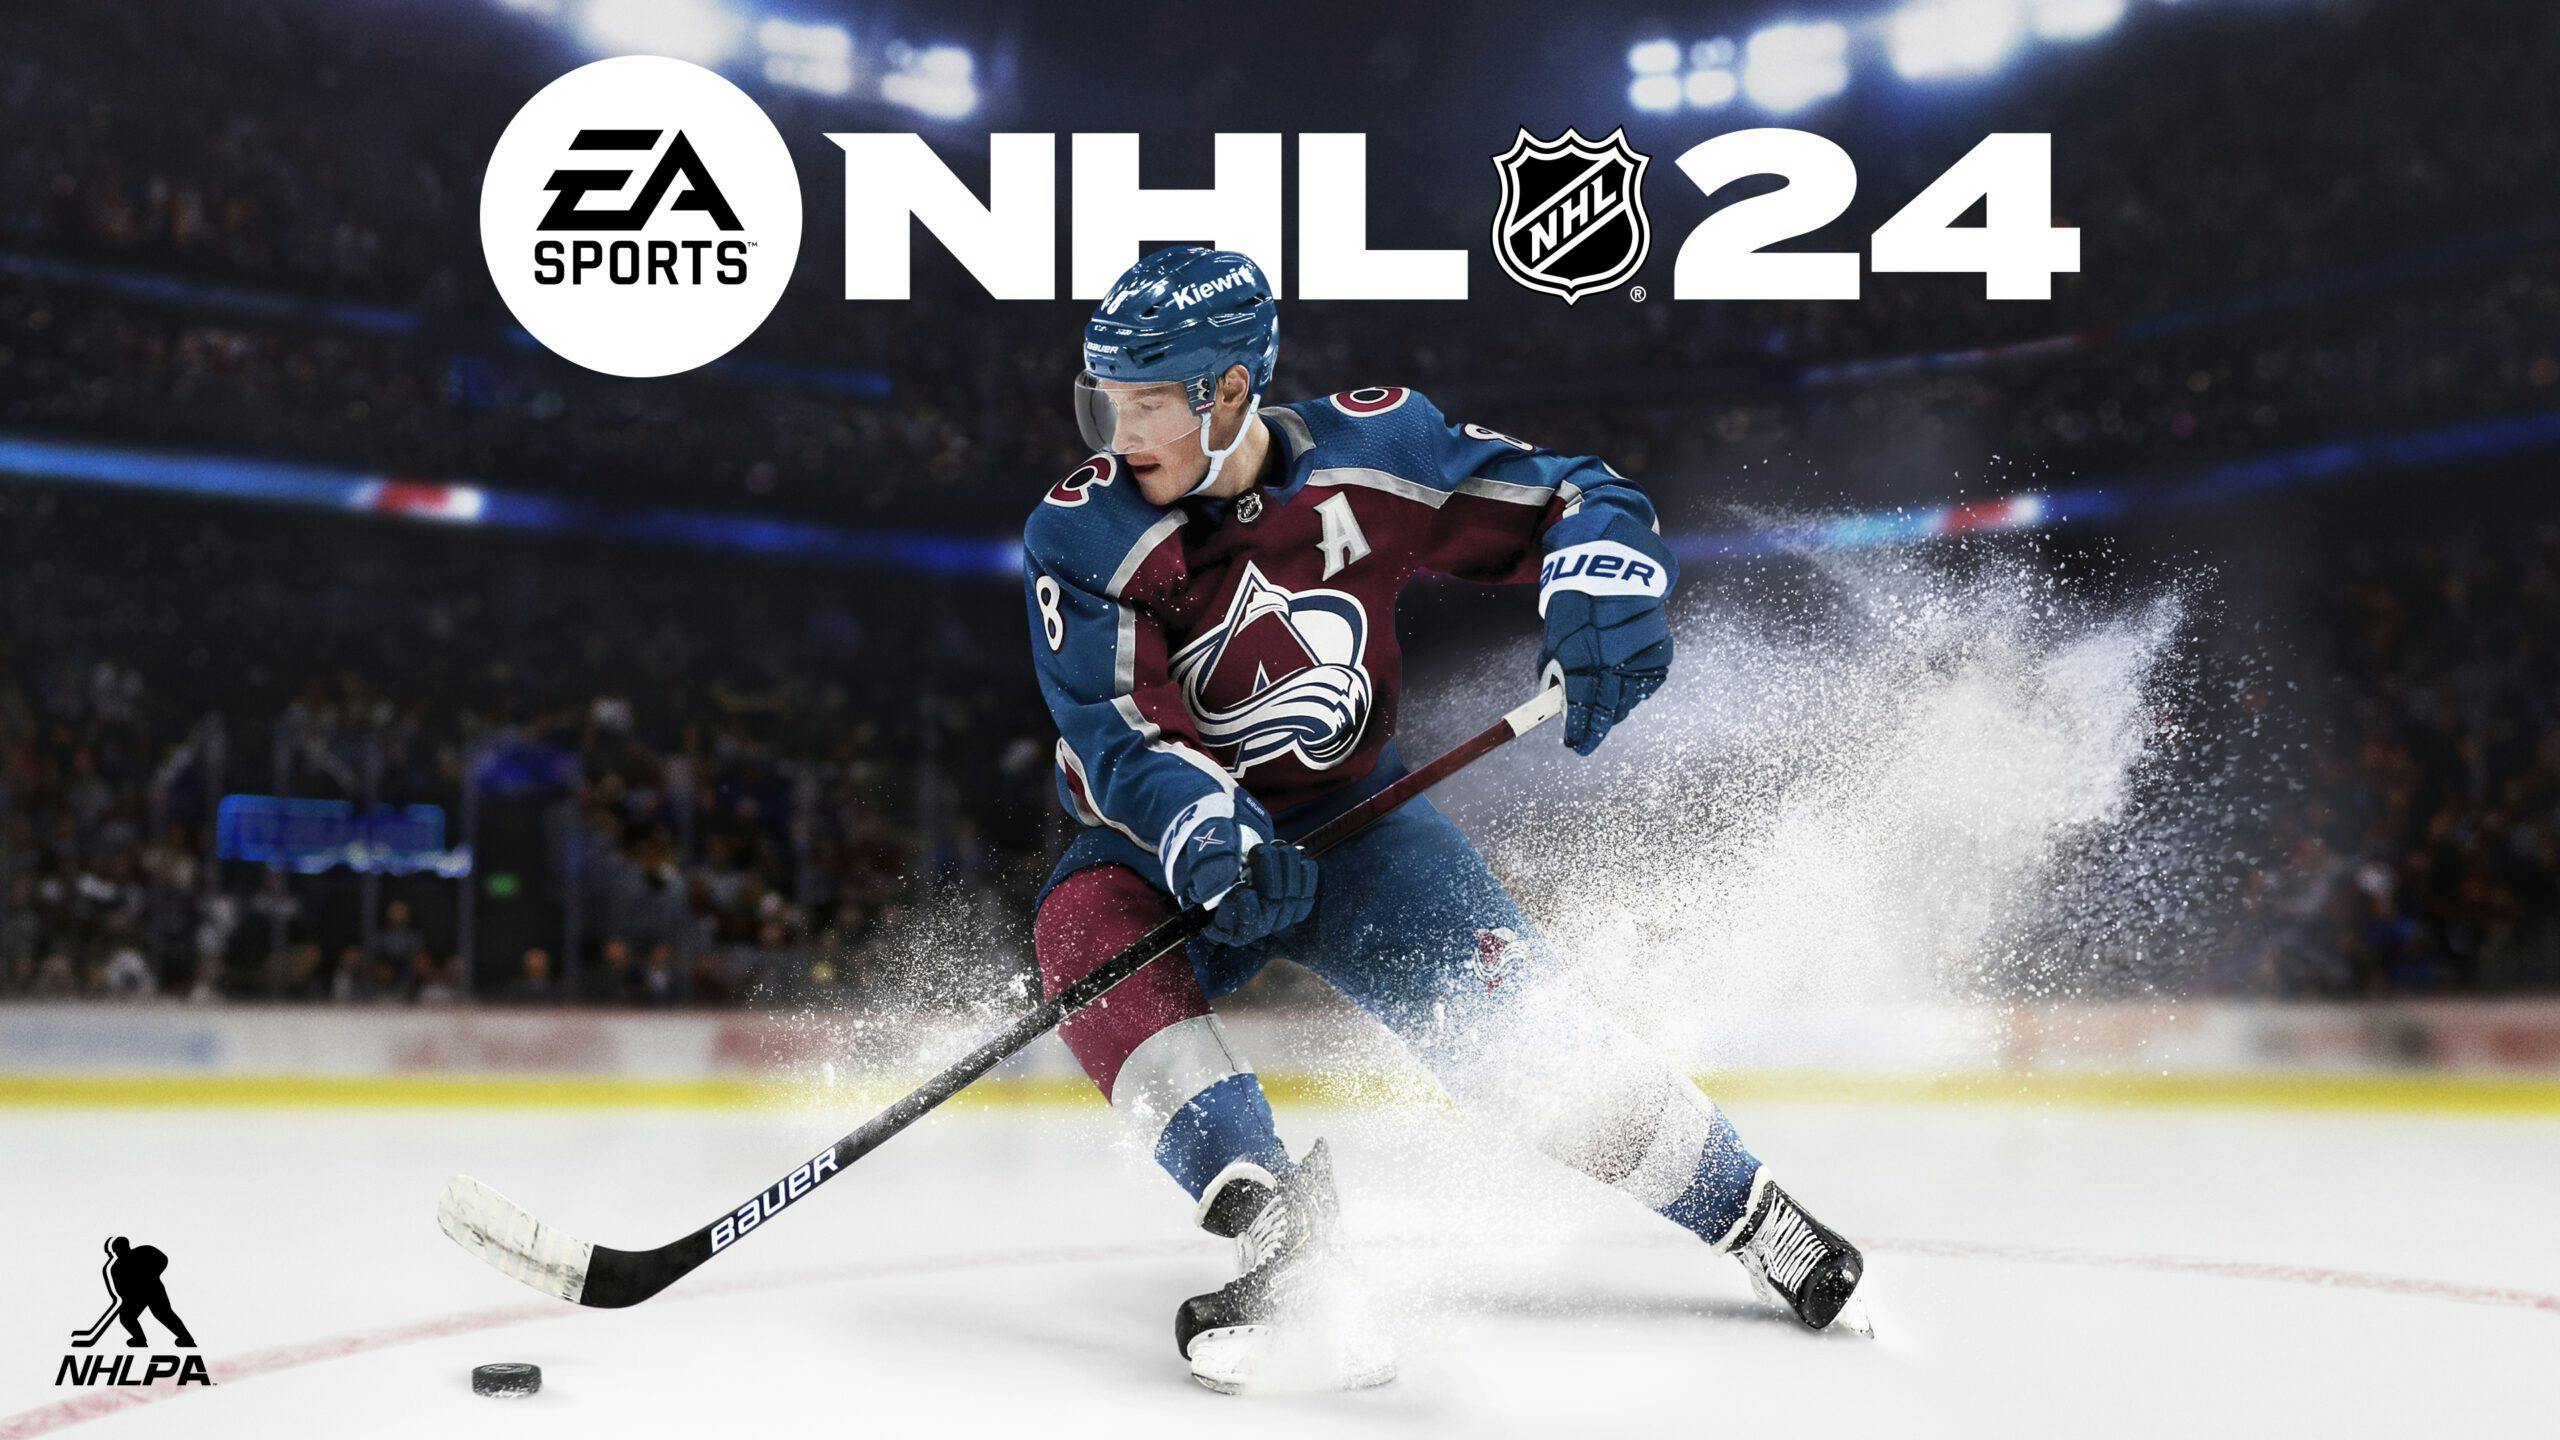 Cale Makar named EA Sports NHL 24 cover athlete